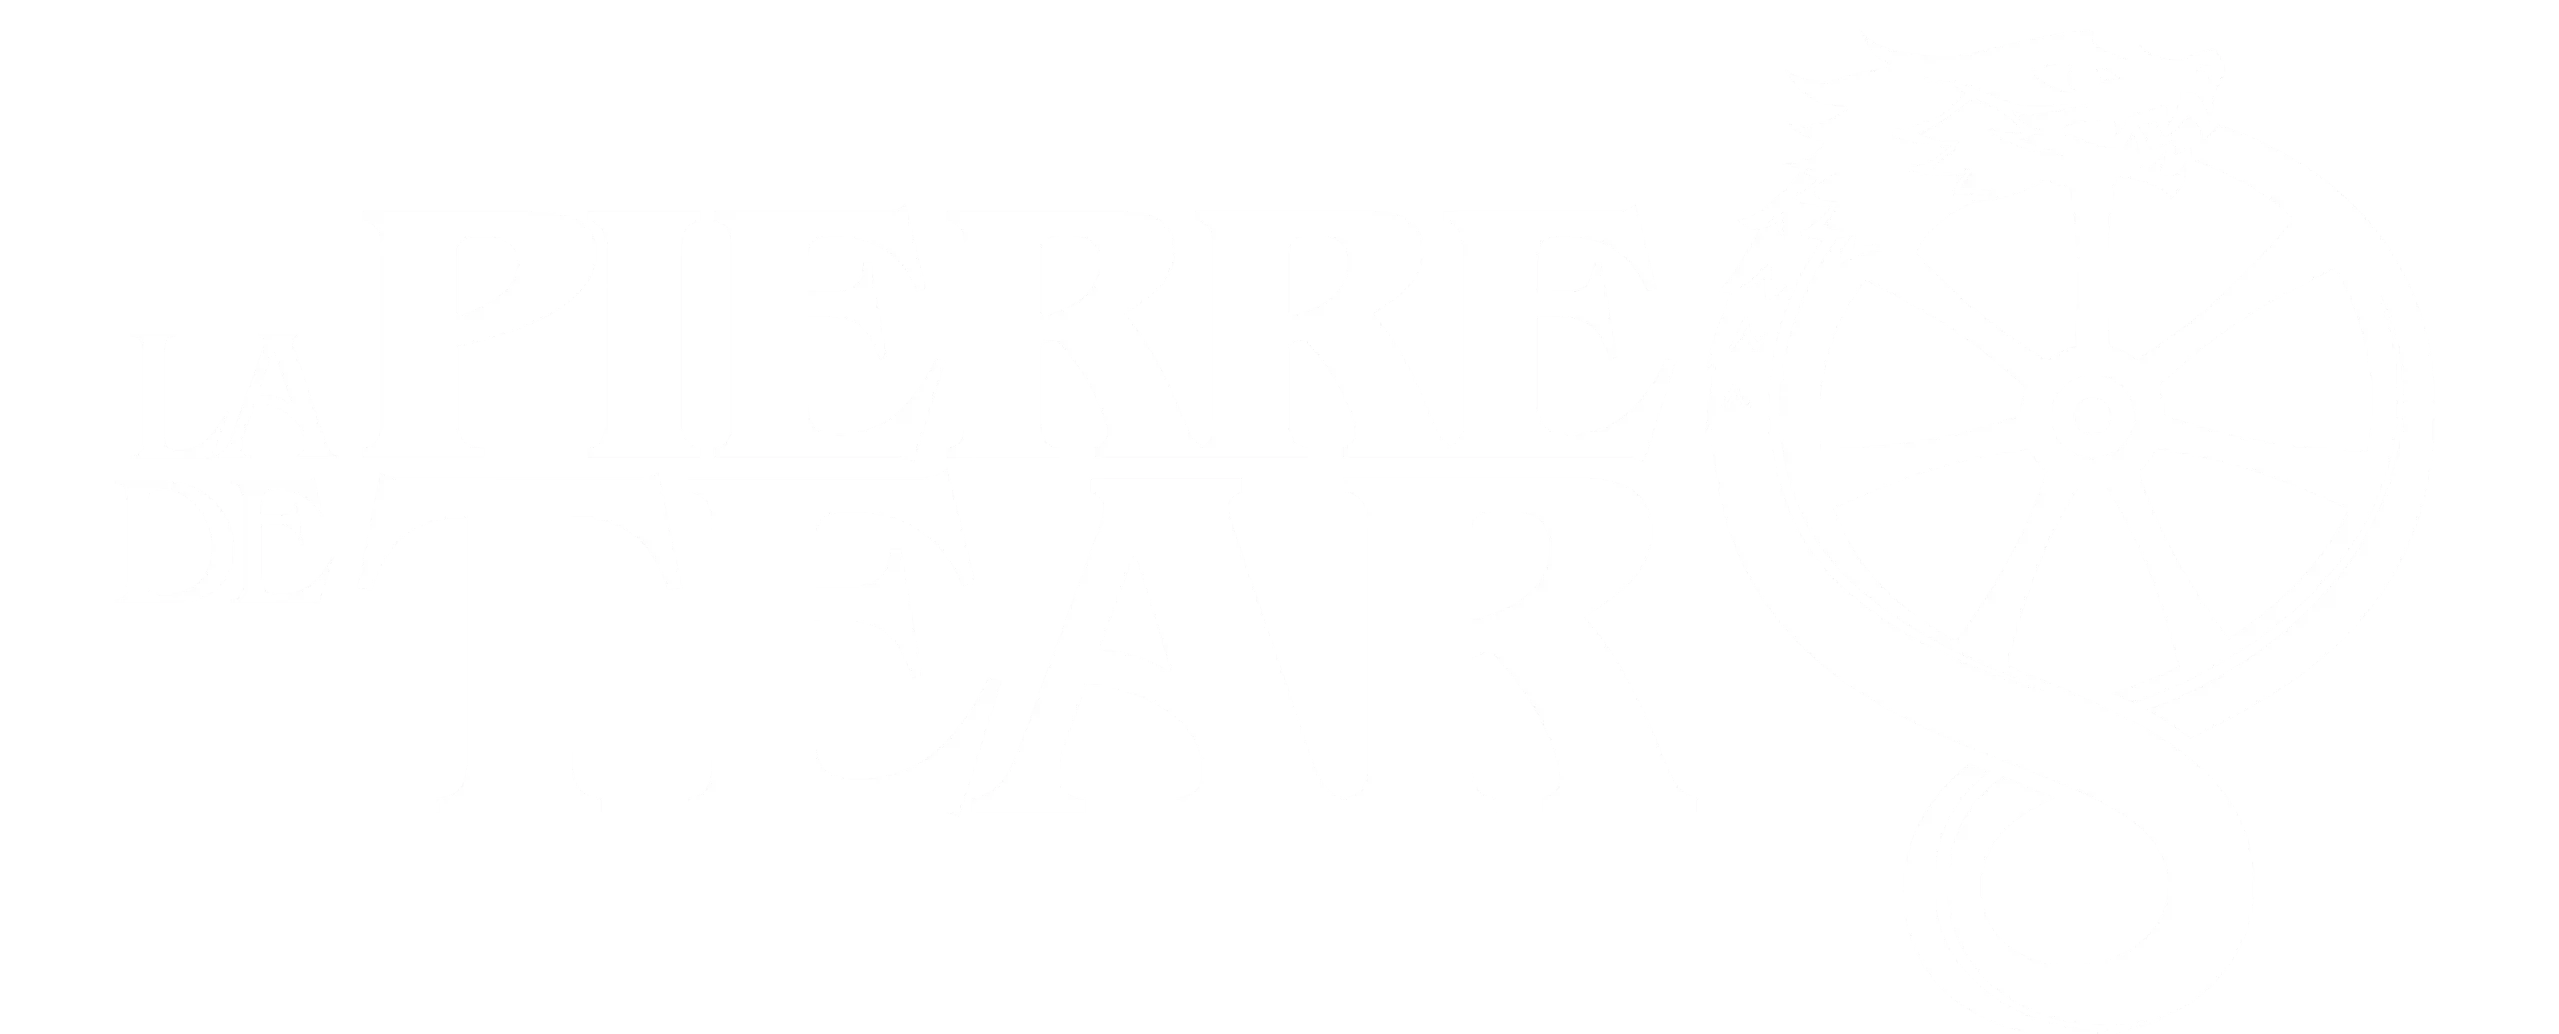 La Pierre de Tear – pierredetear.fr